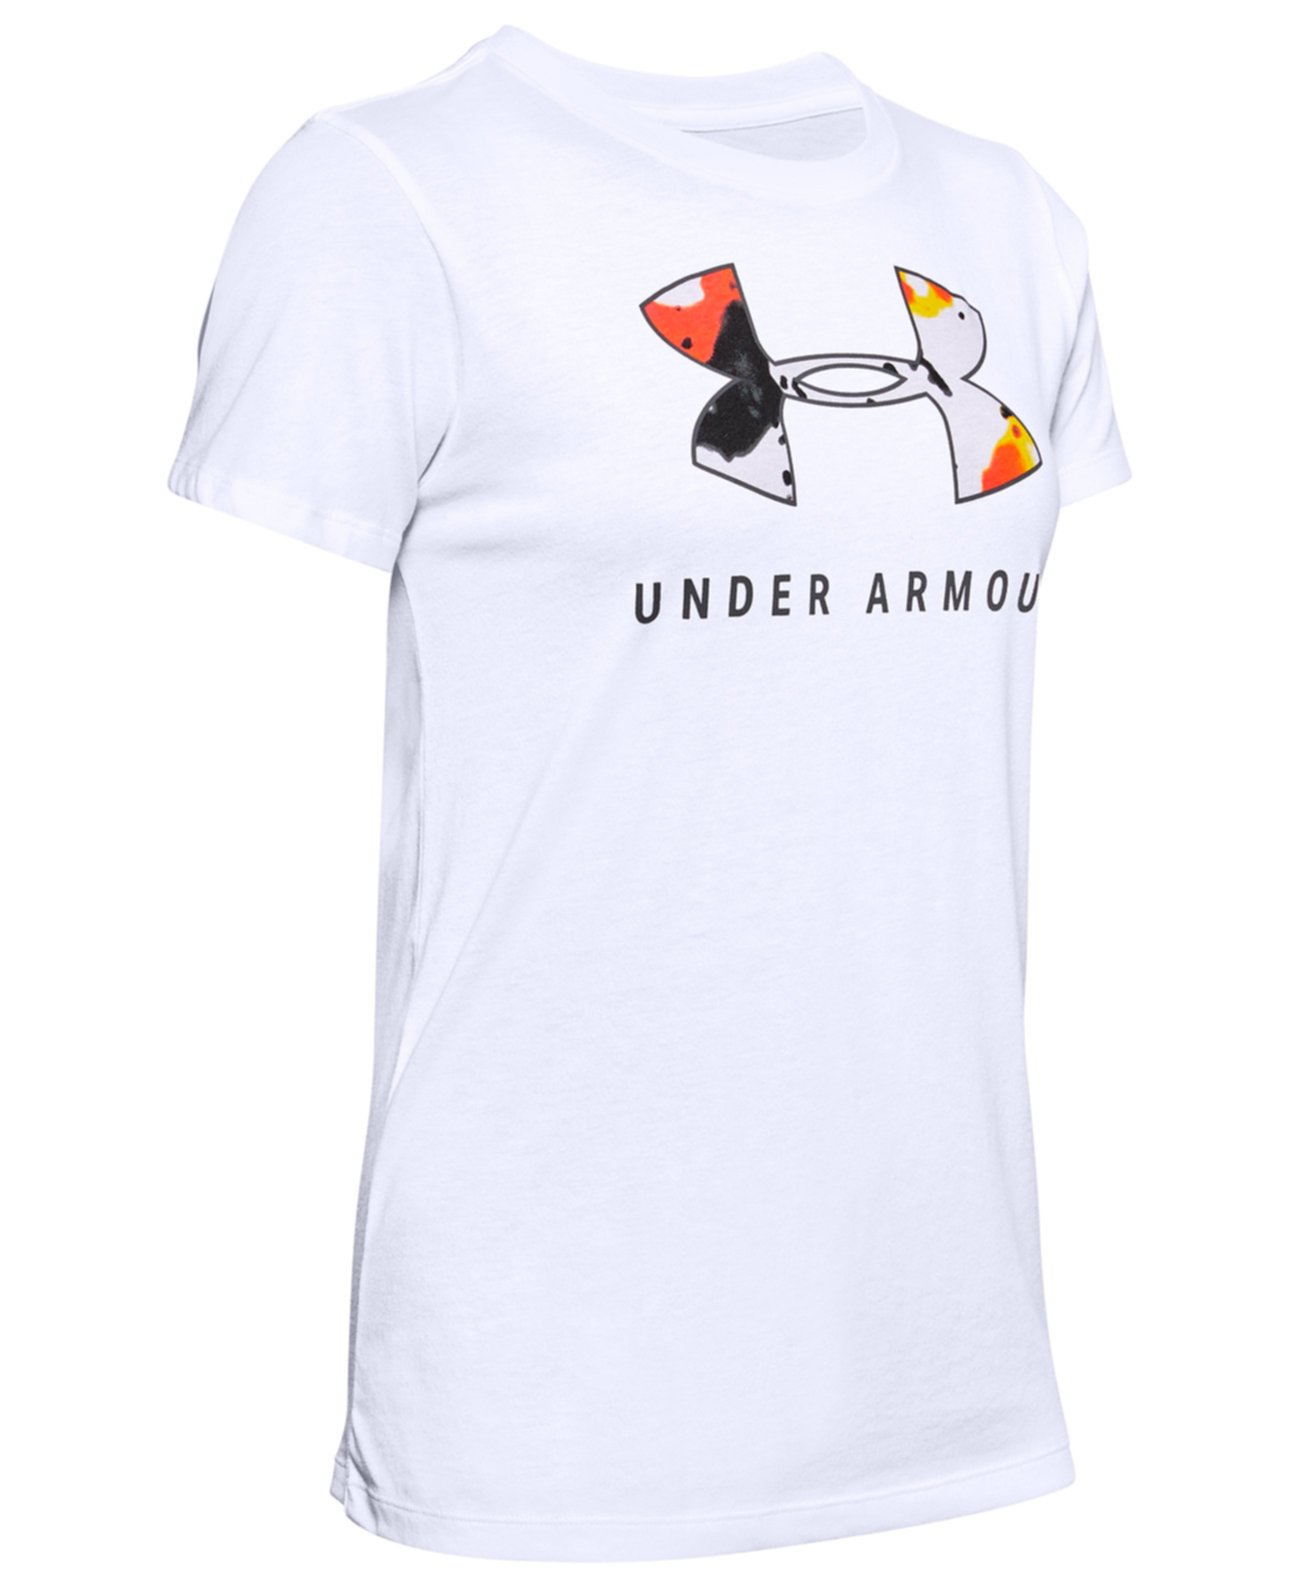 Женская футболка с принтом логотипа Under Armour